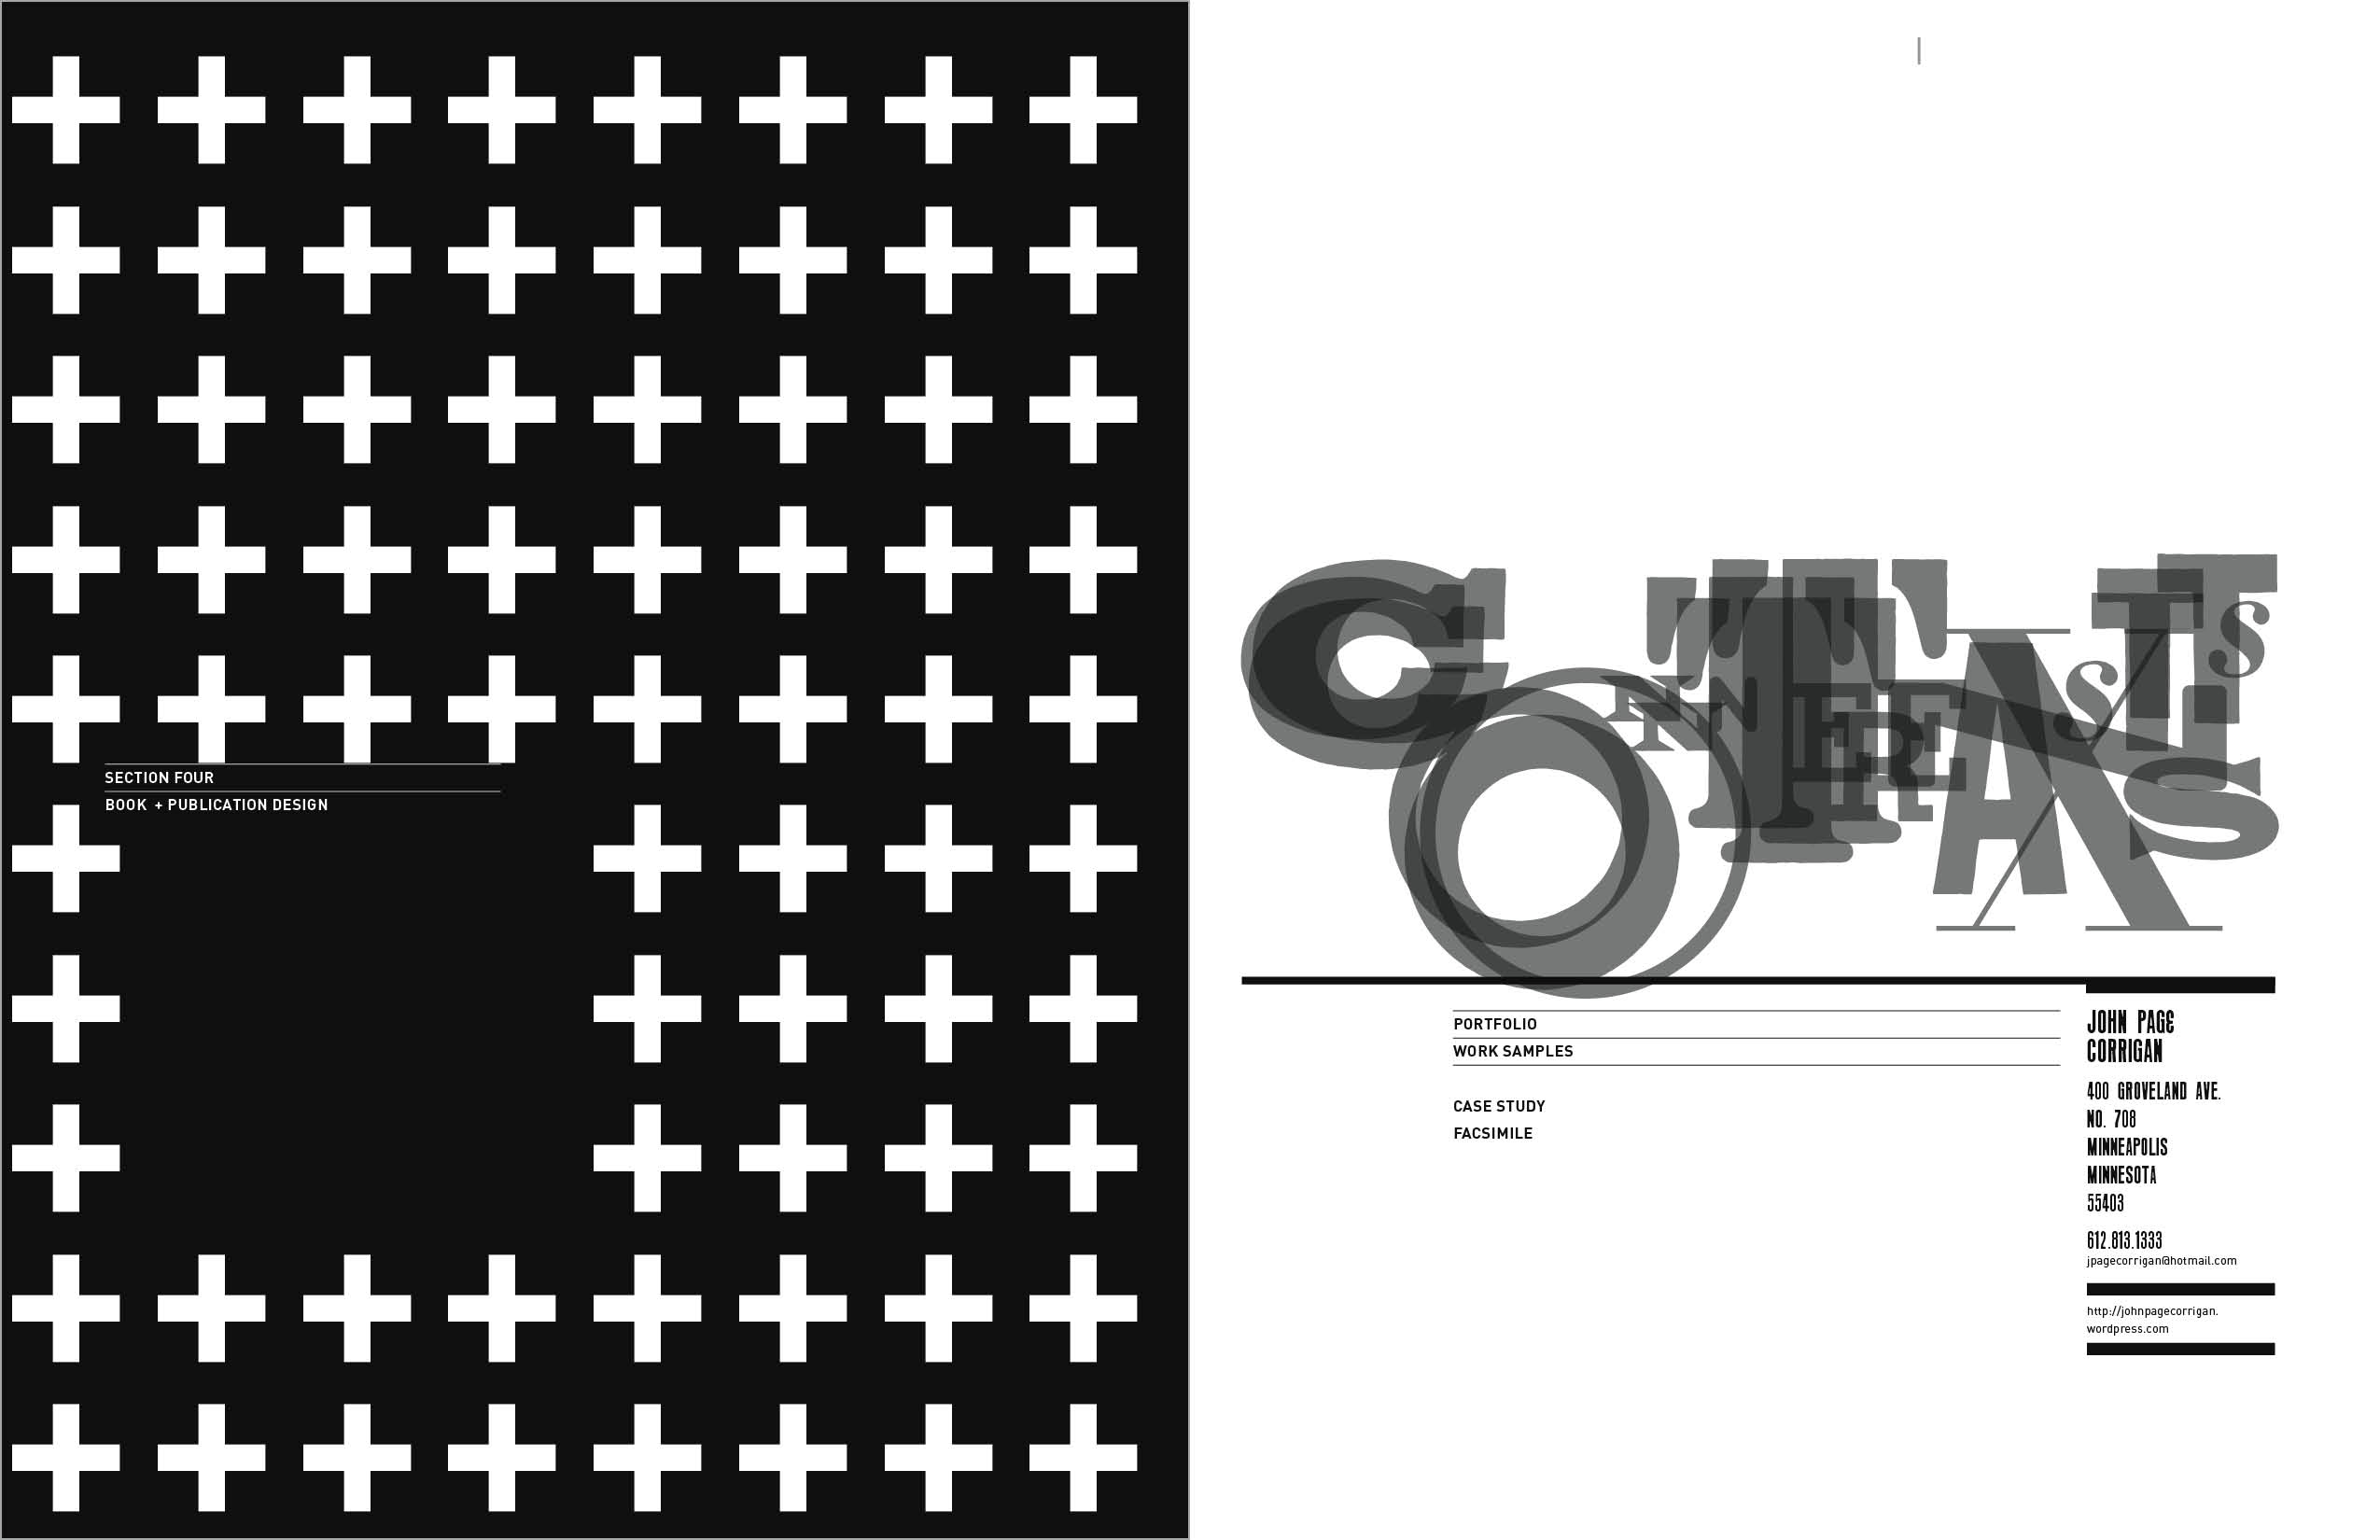 Graphic design mfa thesis